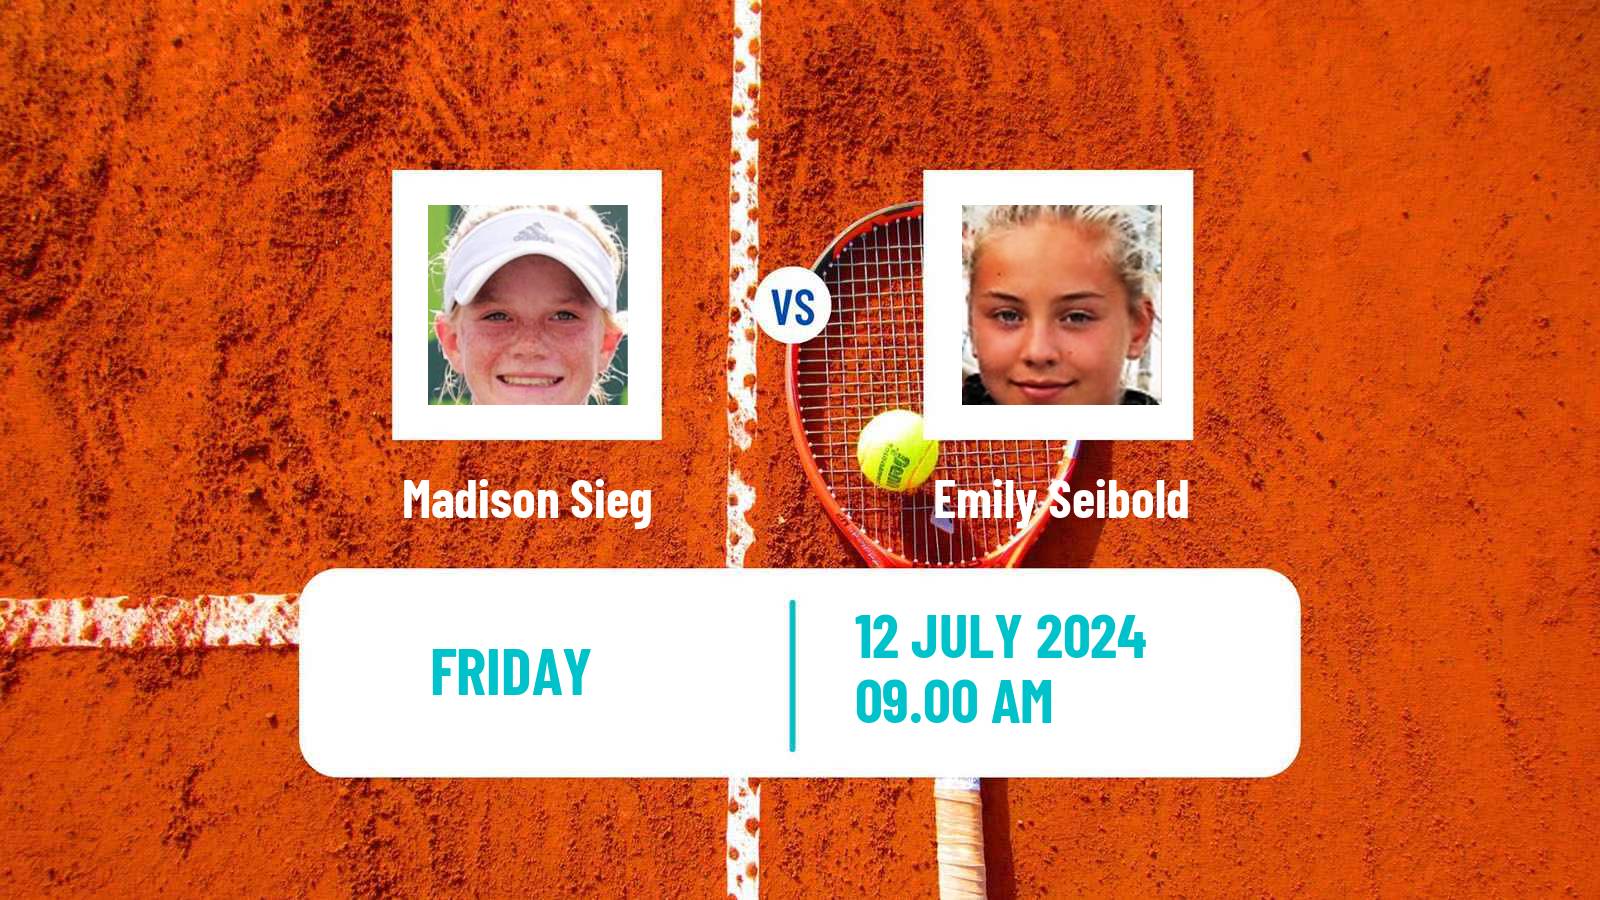 Tennis ITF W35 Aschaffenburg Women Madison Sieg - Emily Seibold